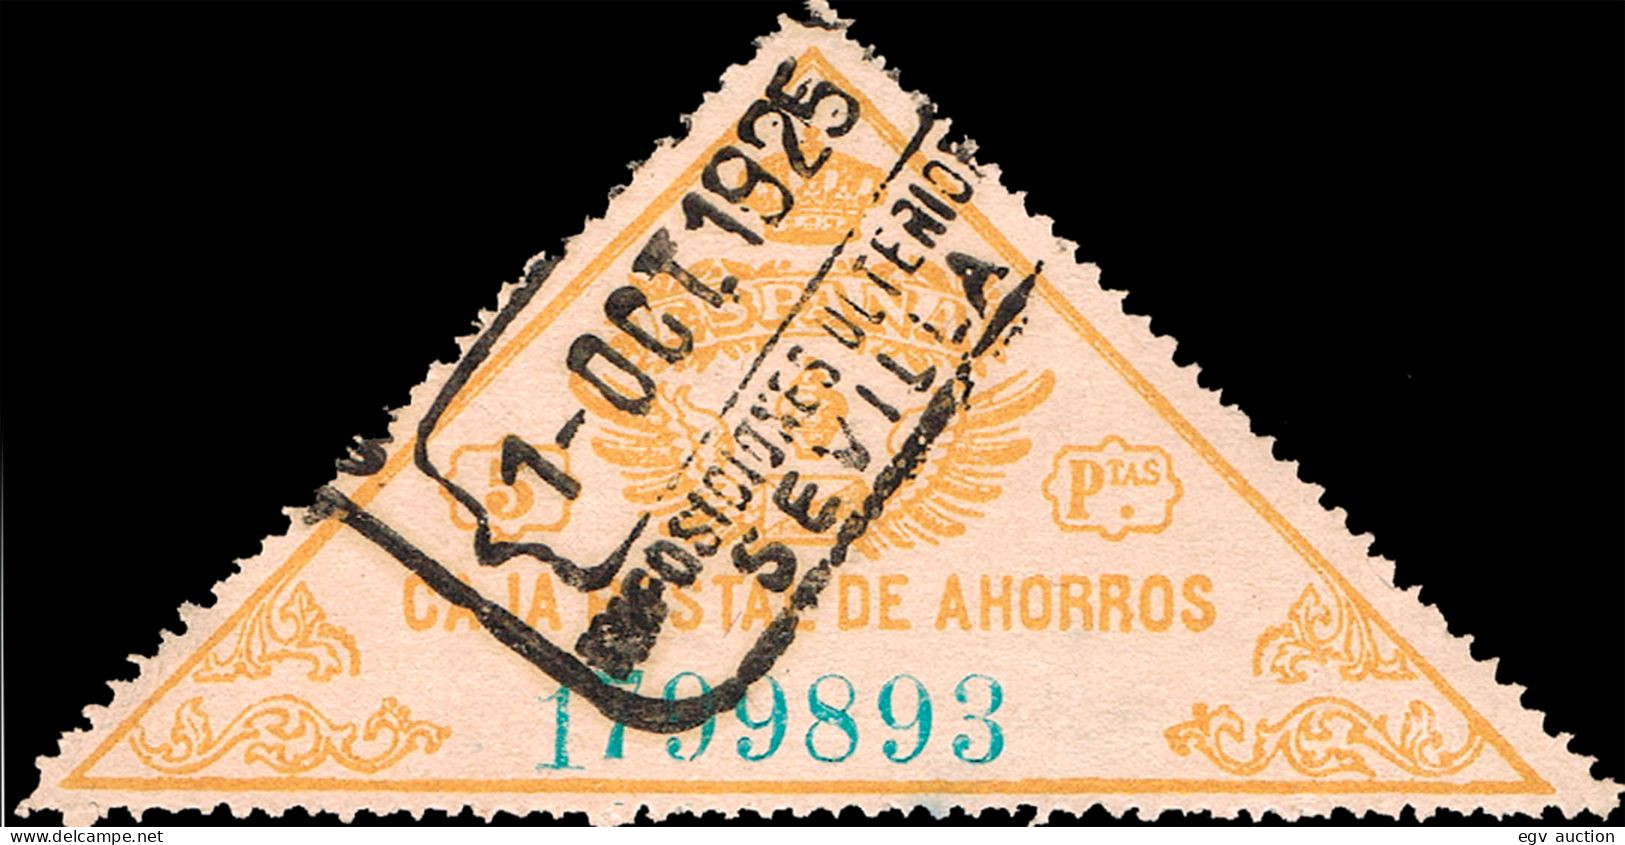 Sevilla - Caja Postal Ahorros - Gávez O 5 - Mat "Caja Postal De Ahorros - Sevilla Imposiciones Ulteriores" - Fiscal-postal